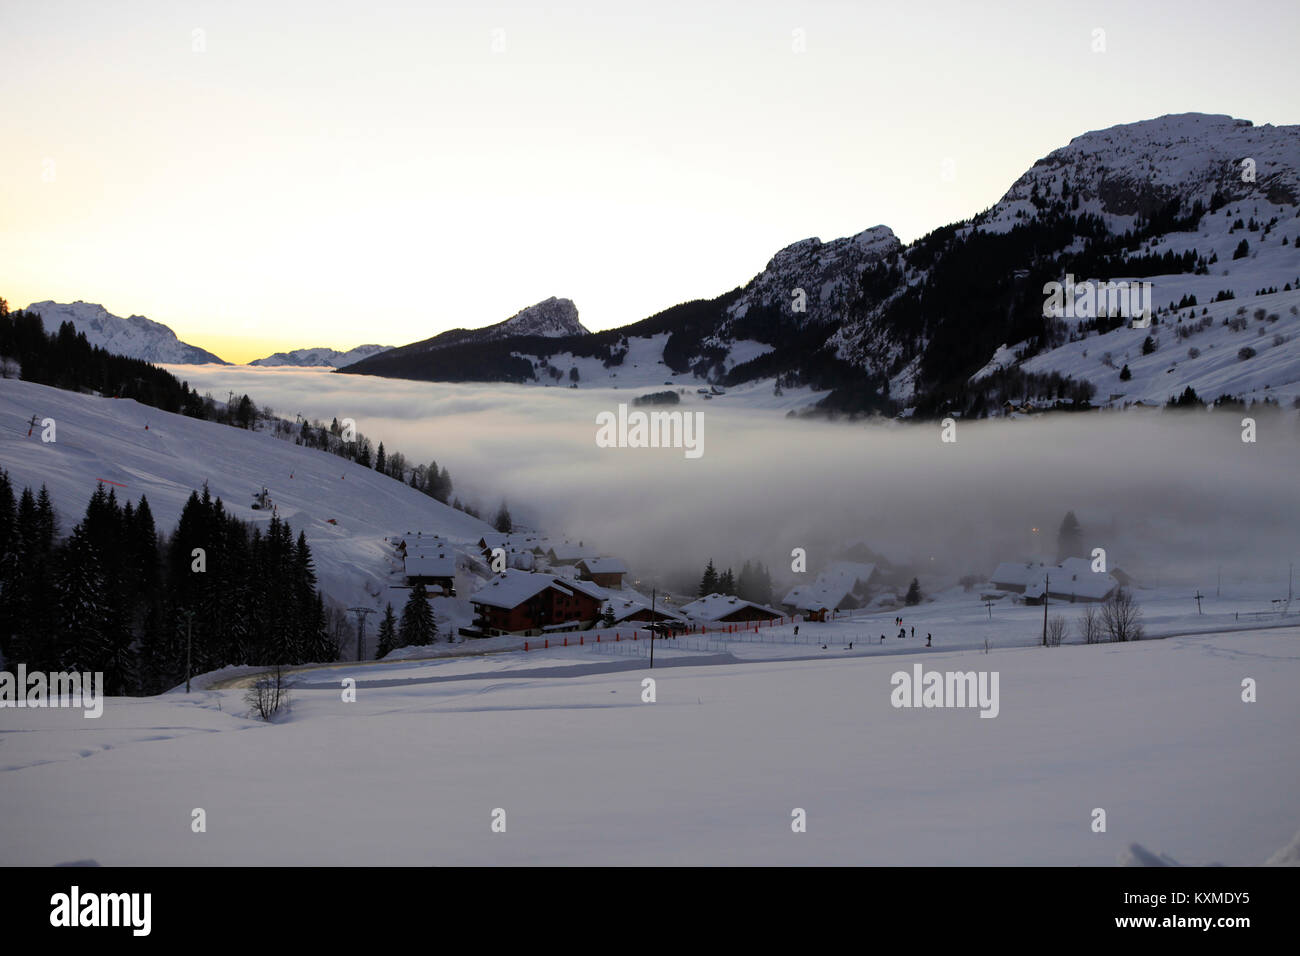 Mer de nuages sur Le Chinaillon, Le Grand Bornand, Haute Savoie, Alpes Françaises. Hiver neige Paysage. Banque D'Images